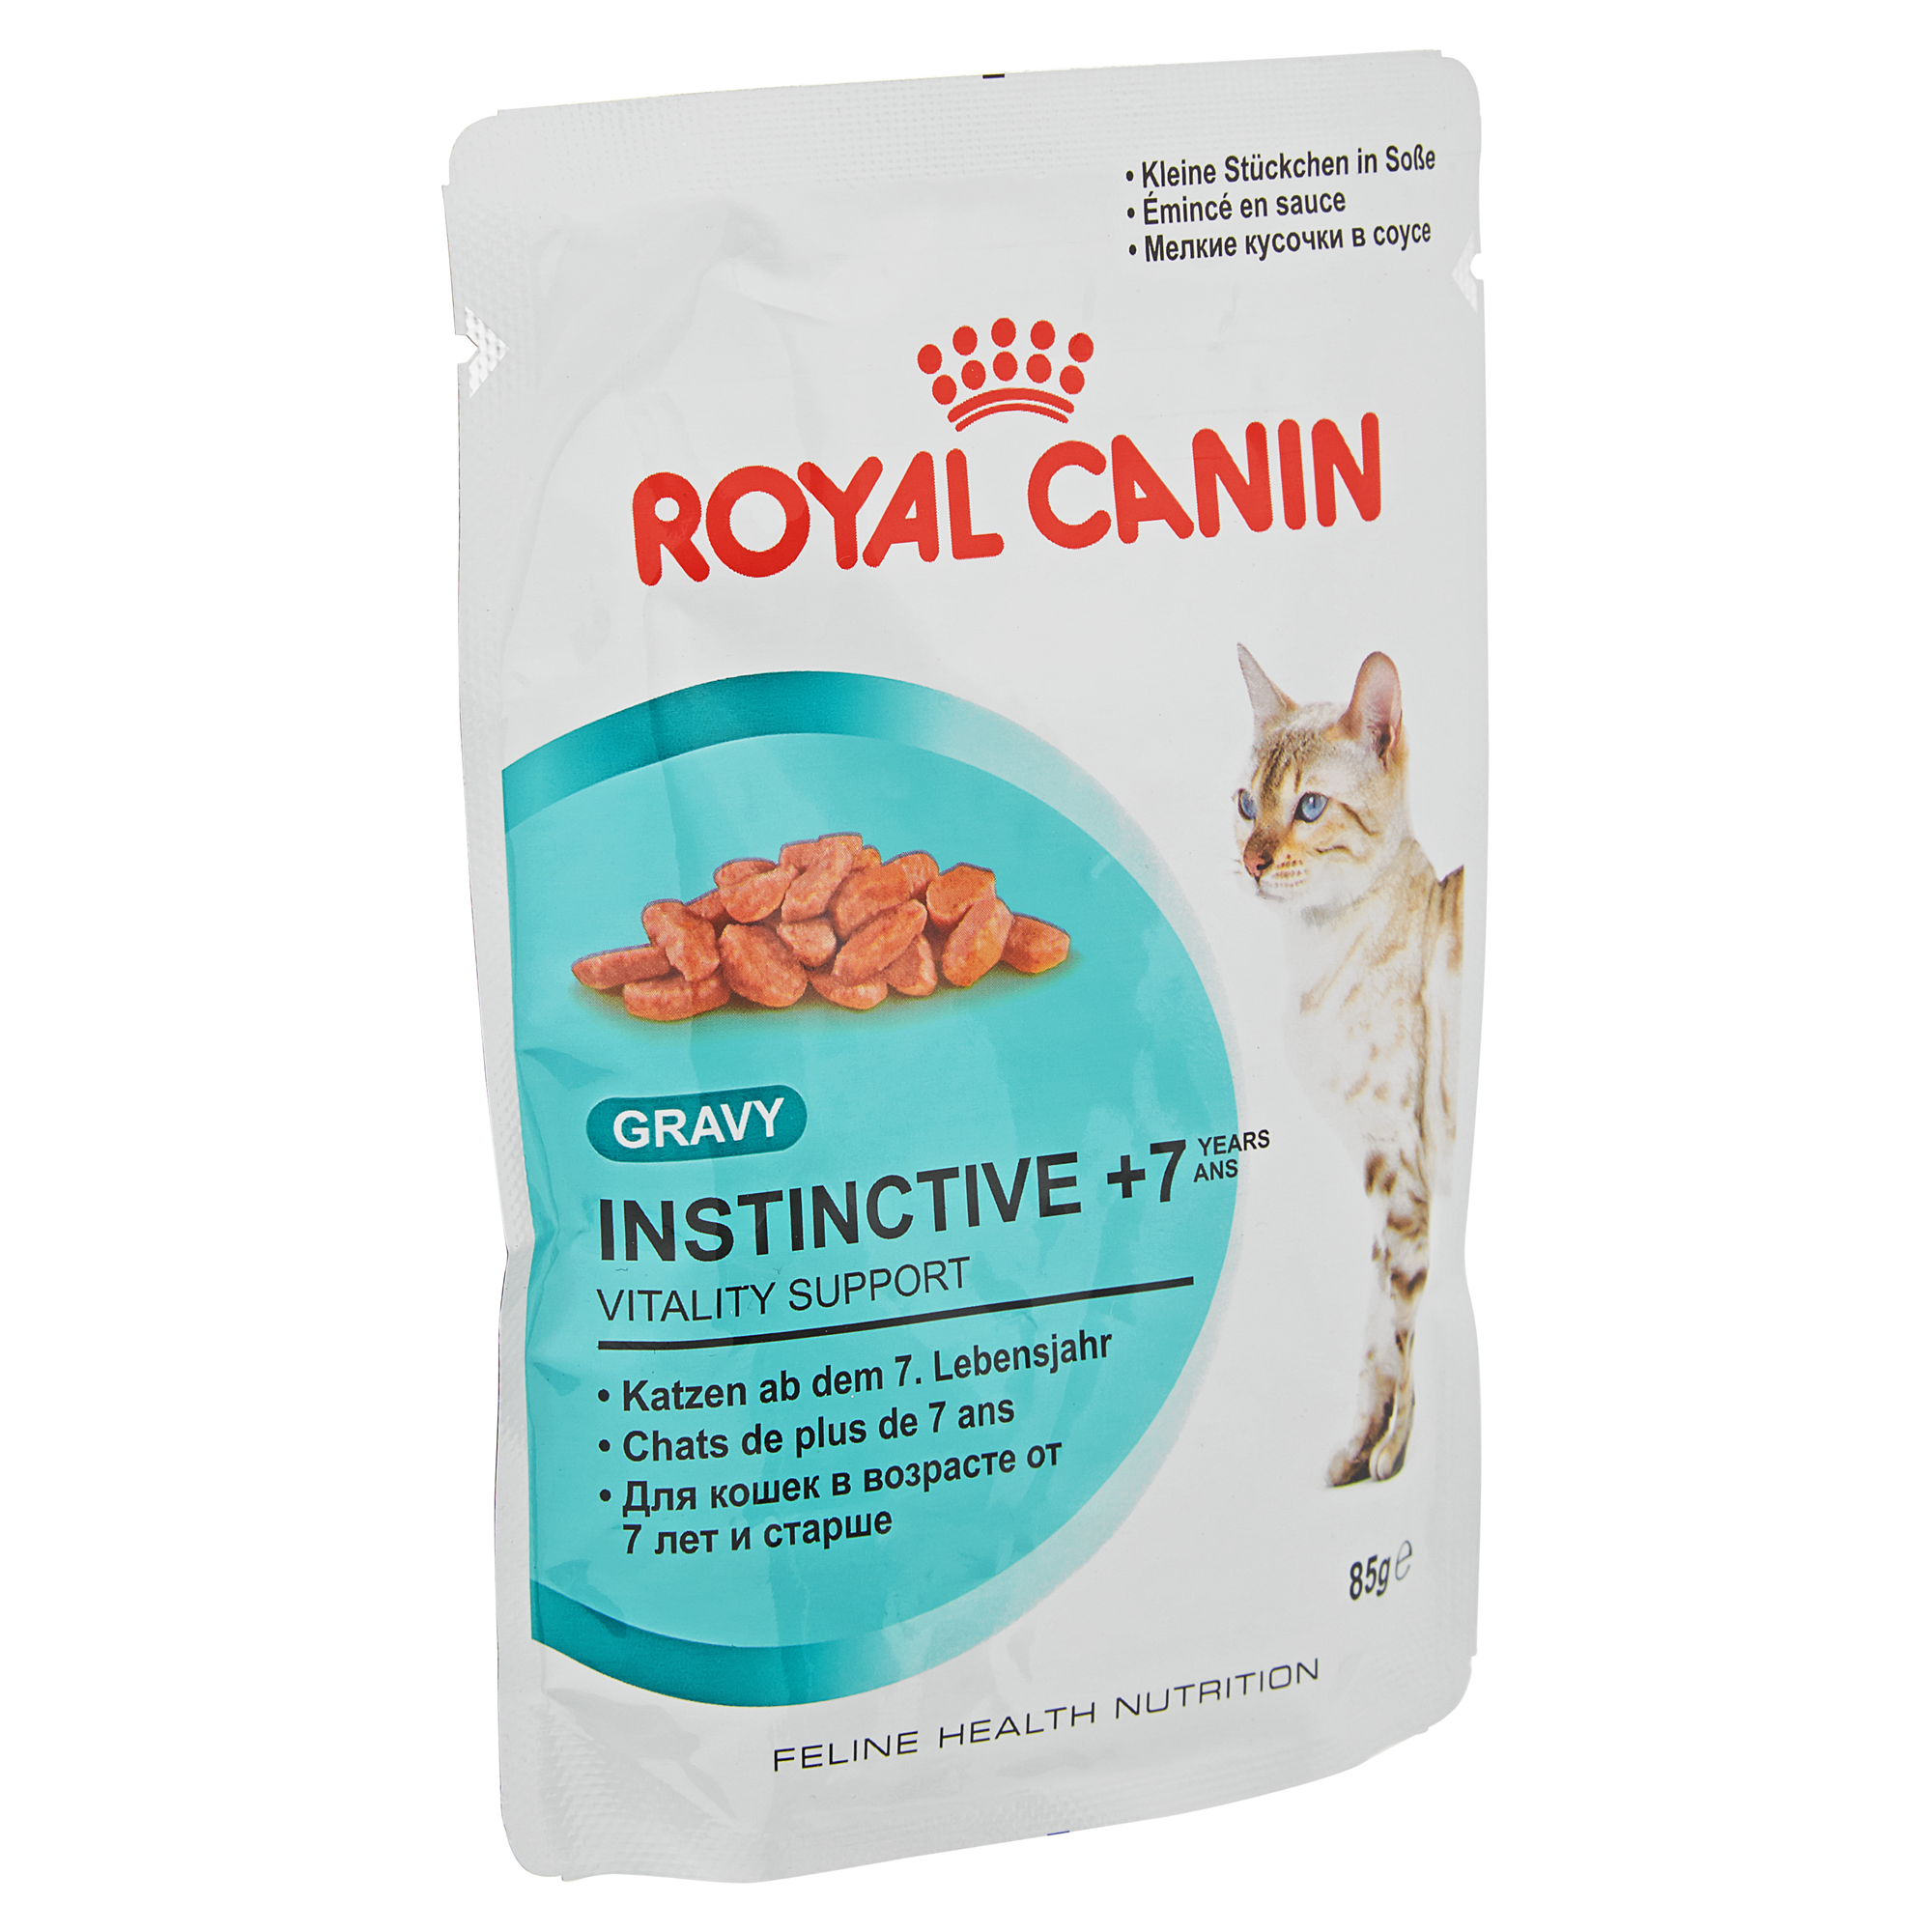 Katzennassfutter "Feline Health Nutrition" Instinctive 7+ 85 g + product picture